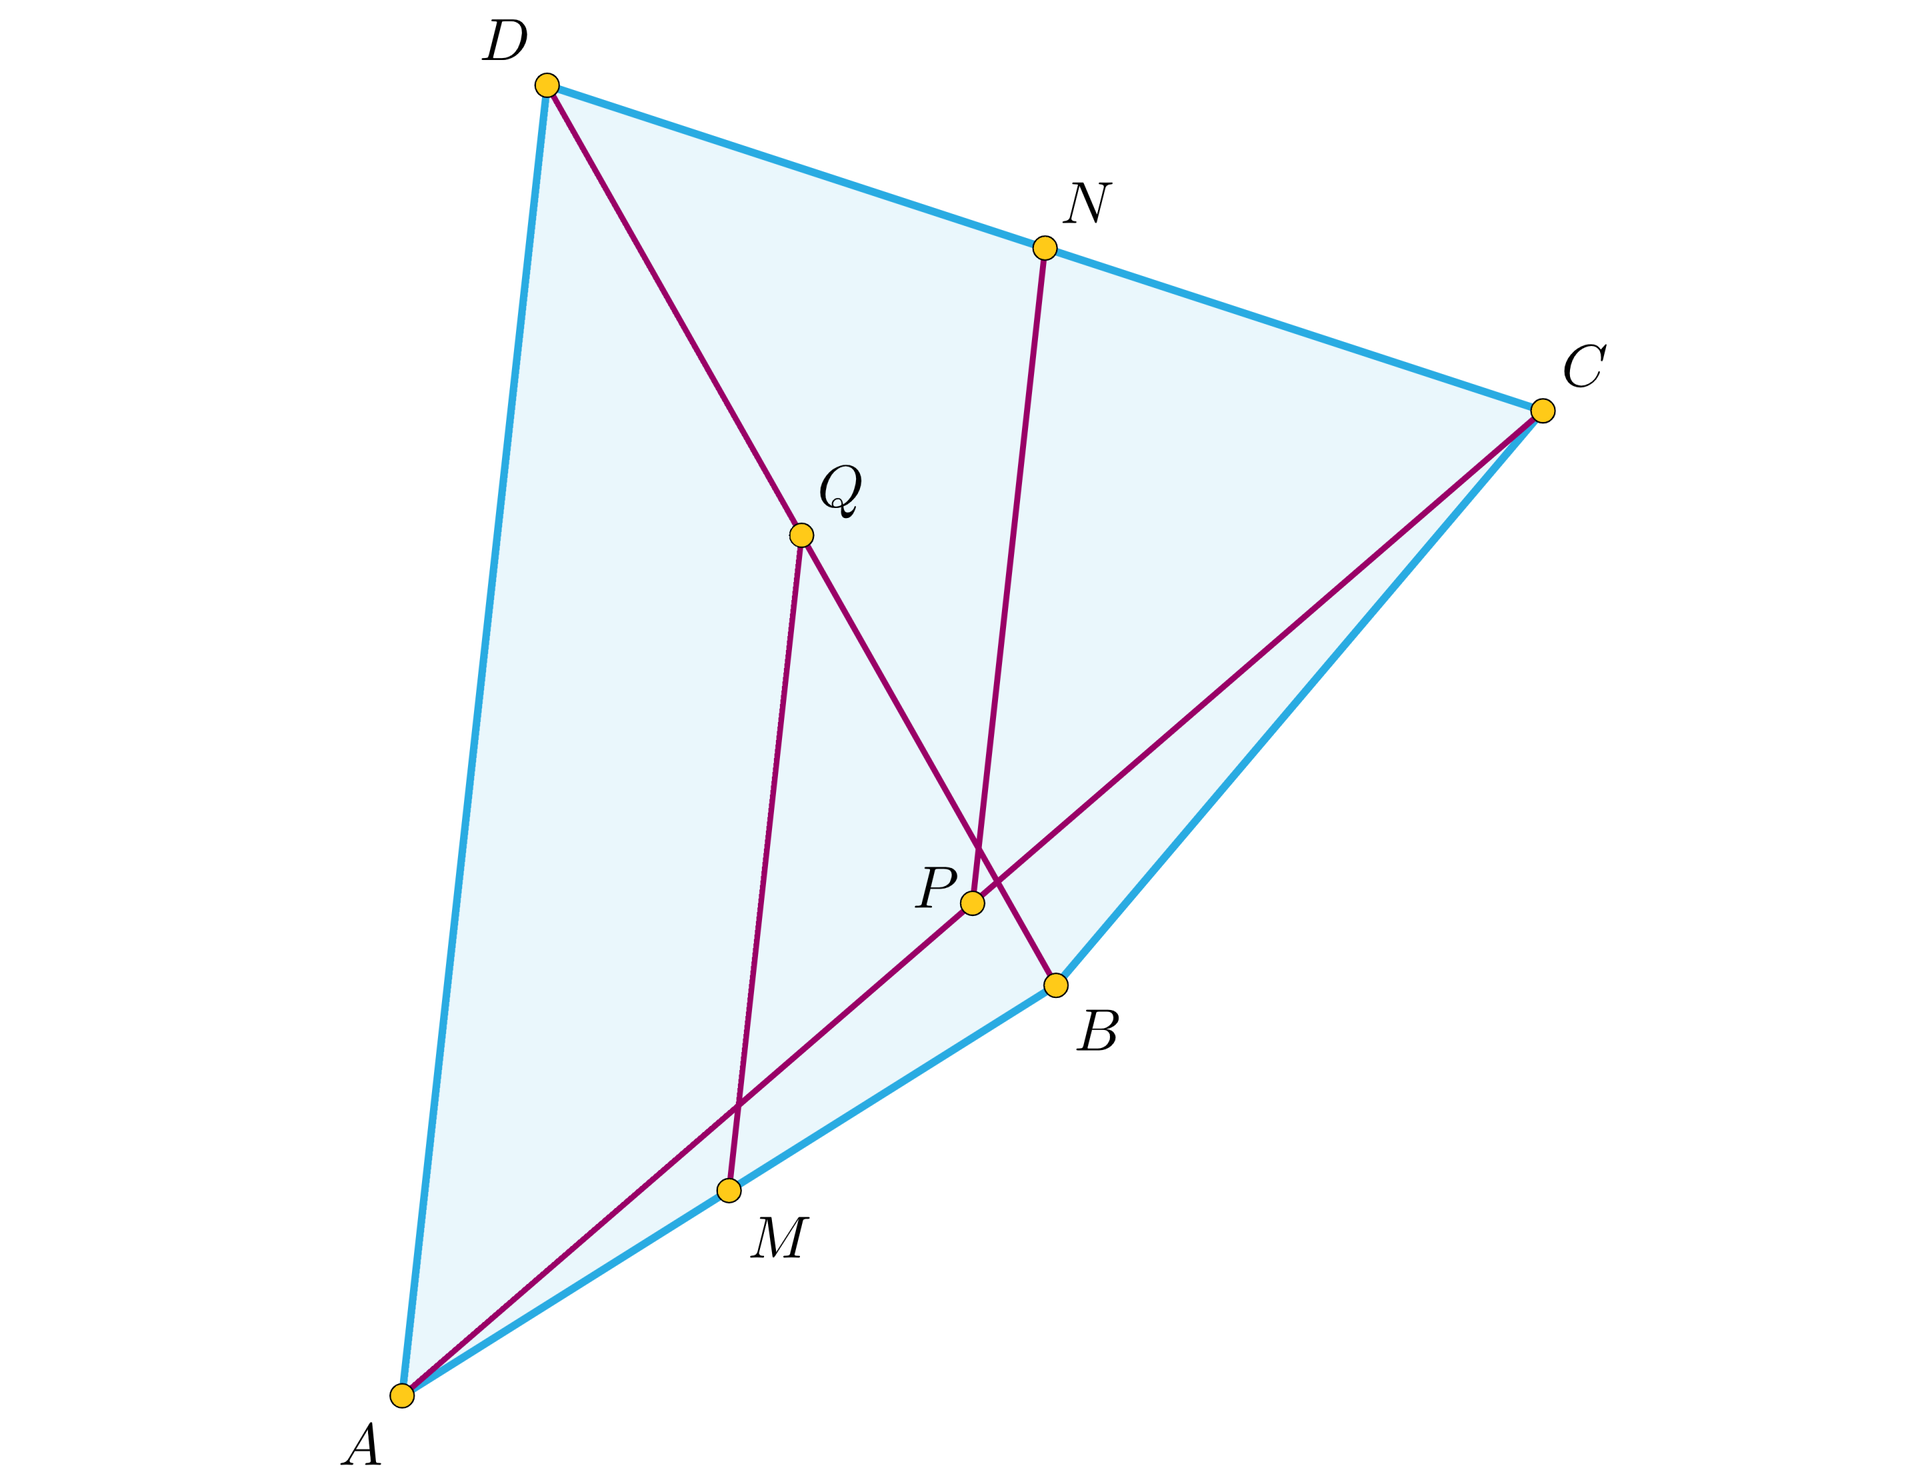 Ilustracja przedstawia czworokąt A B C D o różnych bokach. W czworokącie poprowadzono przekątne A C oraz B D.  Na rysunku zaznaczono  cztery środki odcinków: punkt M jest środkiem boku A B, punkt Q jest środkiem przekątnej B D. Punkty te połączono w odcinek M Q przecinający przekątną A C. Kolejne dwa środki to punkt N będący środkiem boku C D oraz punkt P będący środkiem przekątnej A C. Środki połączono w odcinek N P, który przecina przekątną B D. Żaden ze środków przekątnych nie pokrywa się z punktem przecięcia przekątnych.